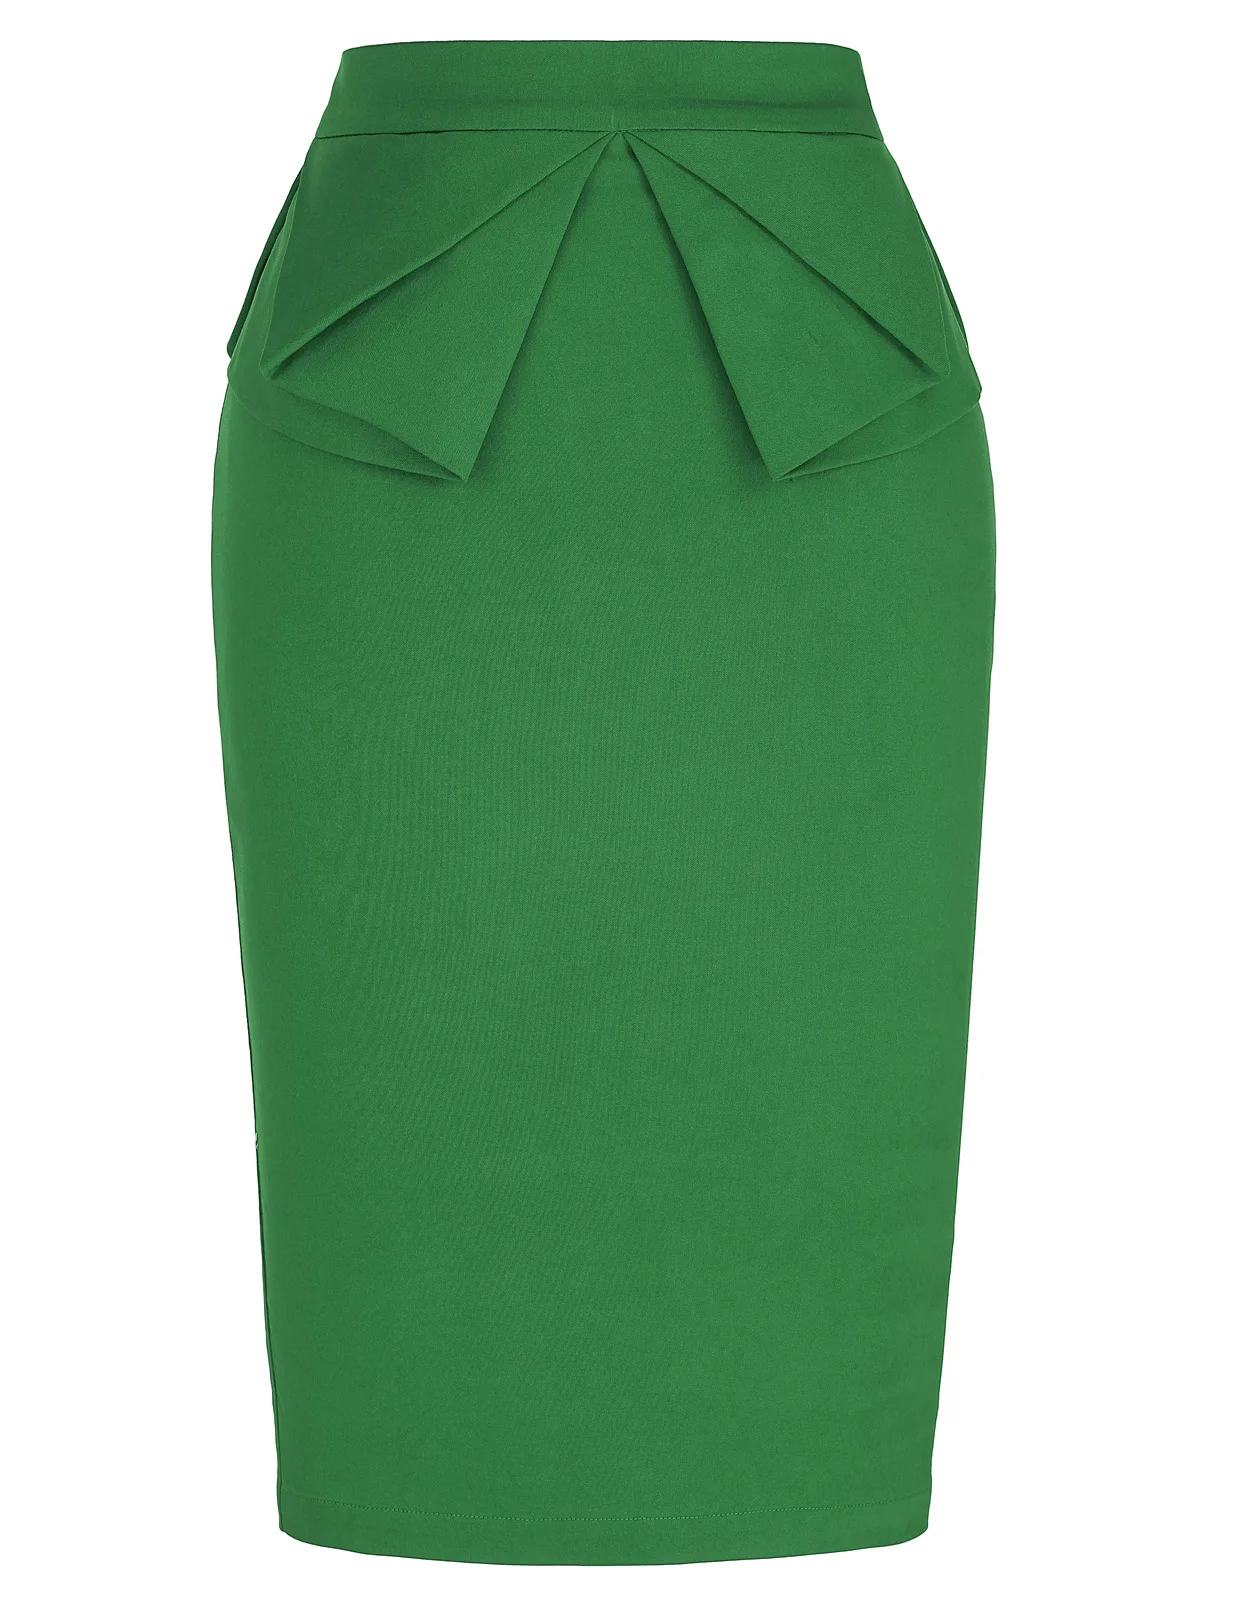 Formal Office Business Women Skirt Elastic Plain Formal Office High waist Business Casual Skirt High Waist Pencil Cut - Цвет: Green